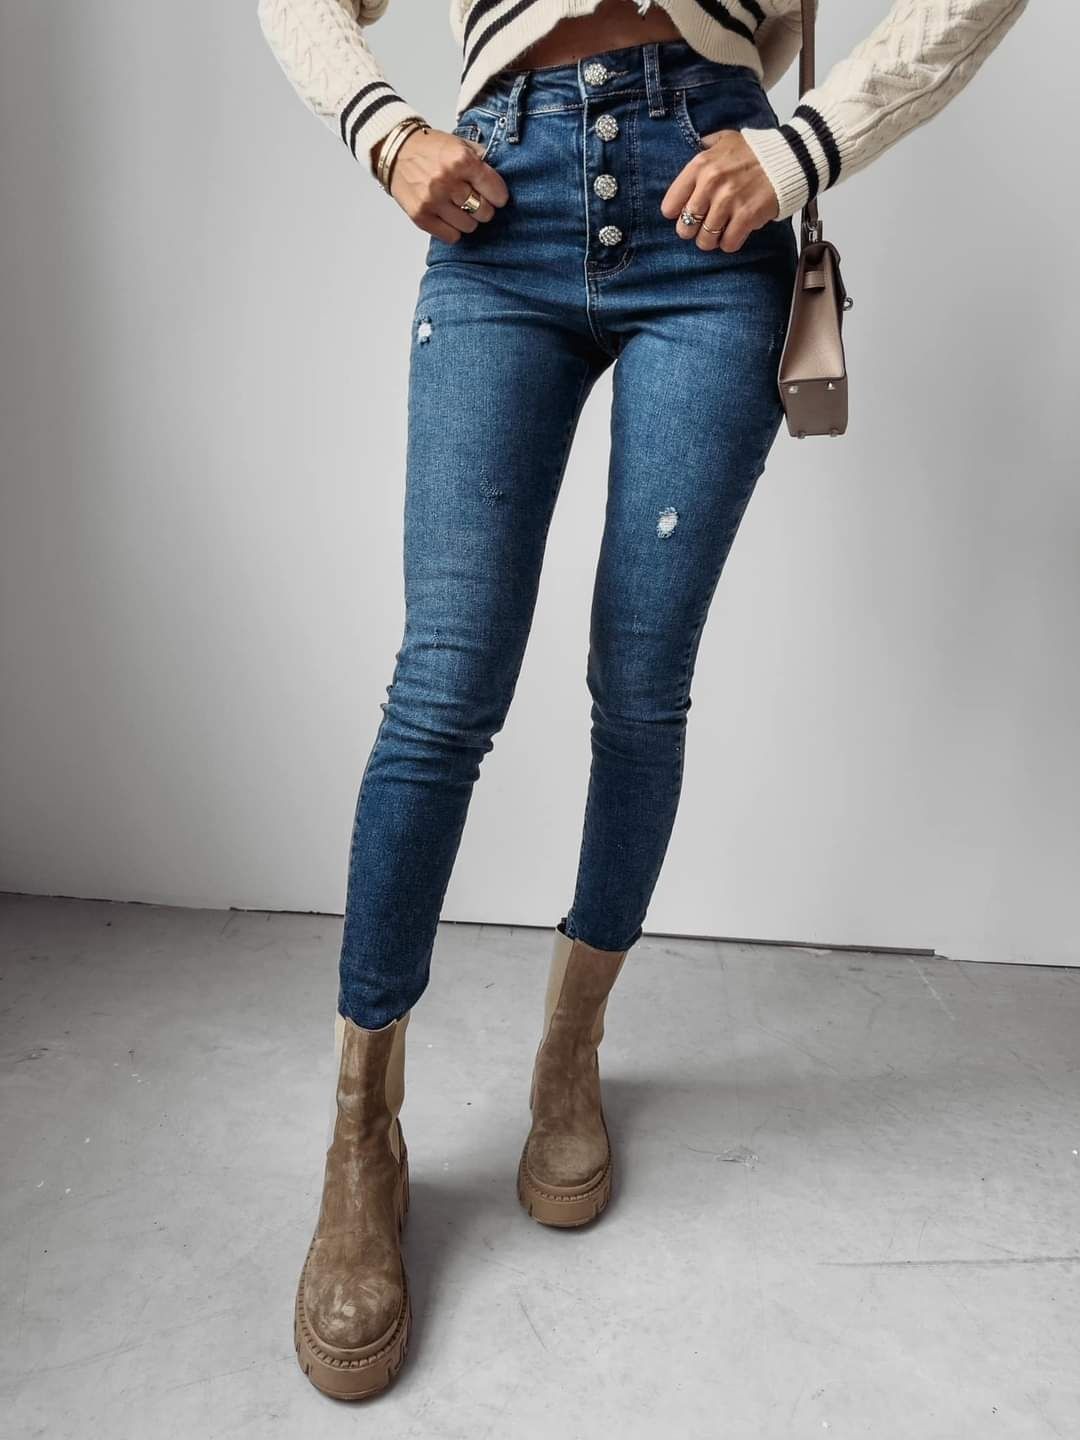 Spodnie damskie jeansowe olavoga Boise czarne niebieskie XS S M